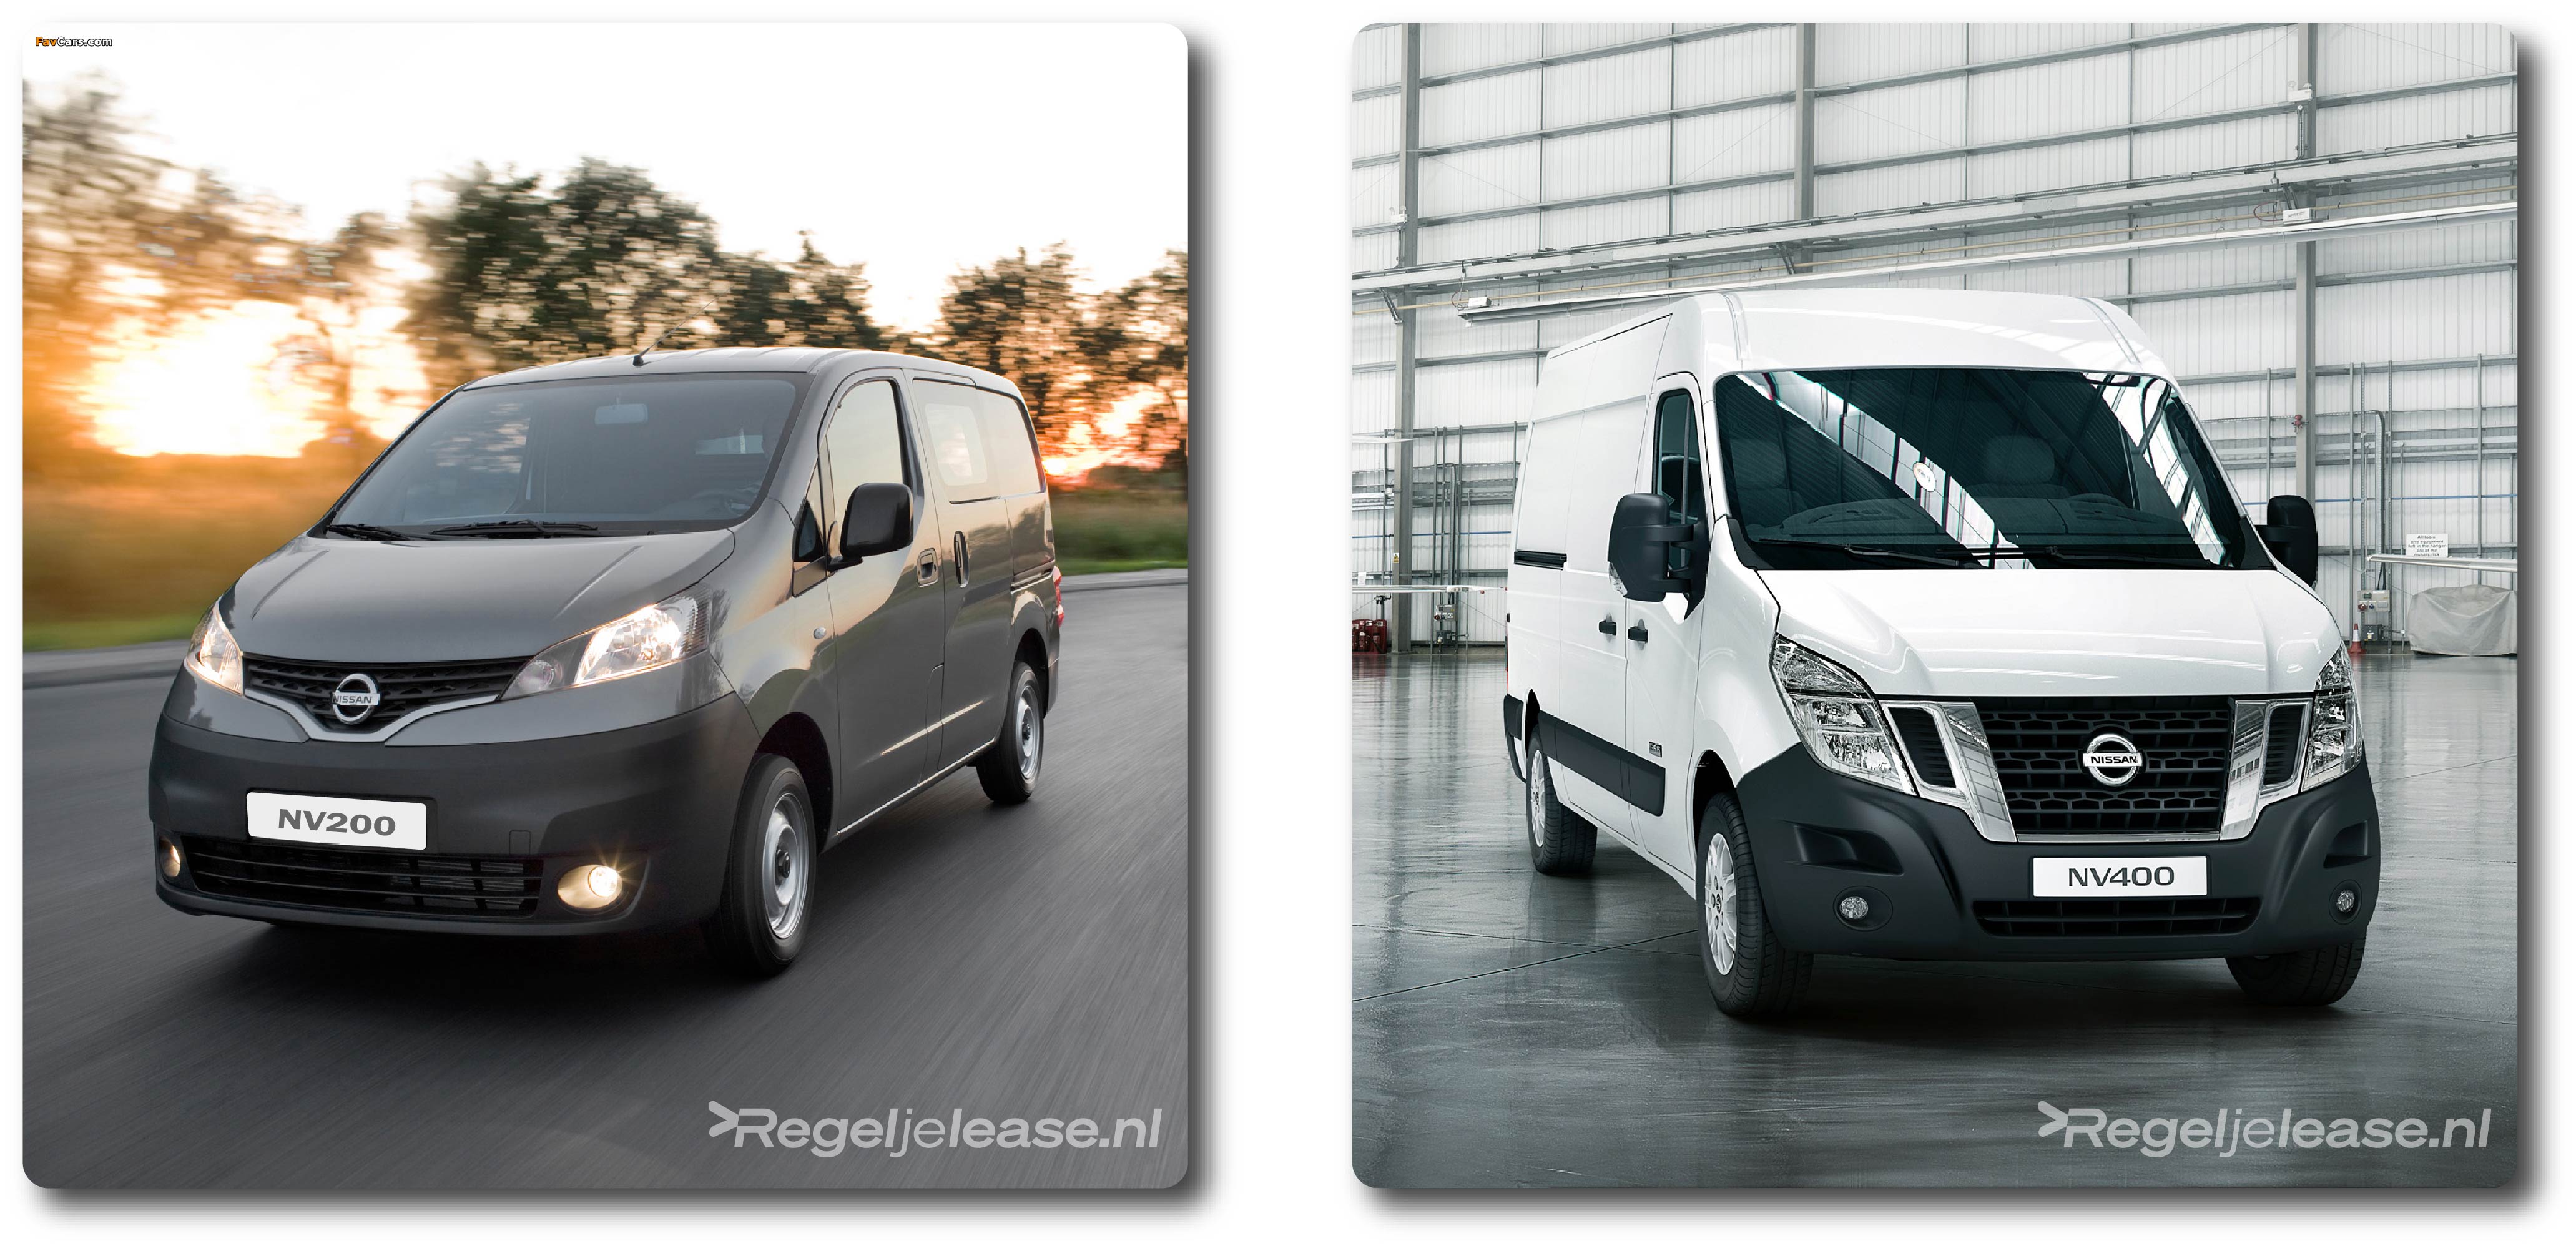 Aanbod-Bedrijfsauto-Nissan-Financial-Lease-Regeljelease.nl-NV200-NV400